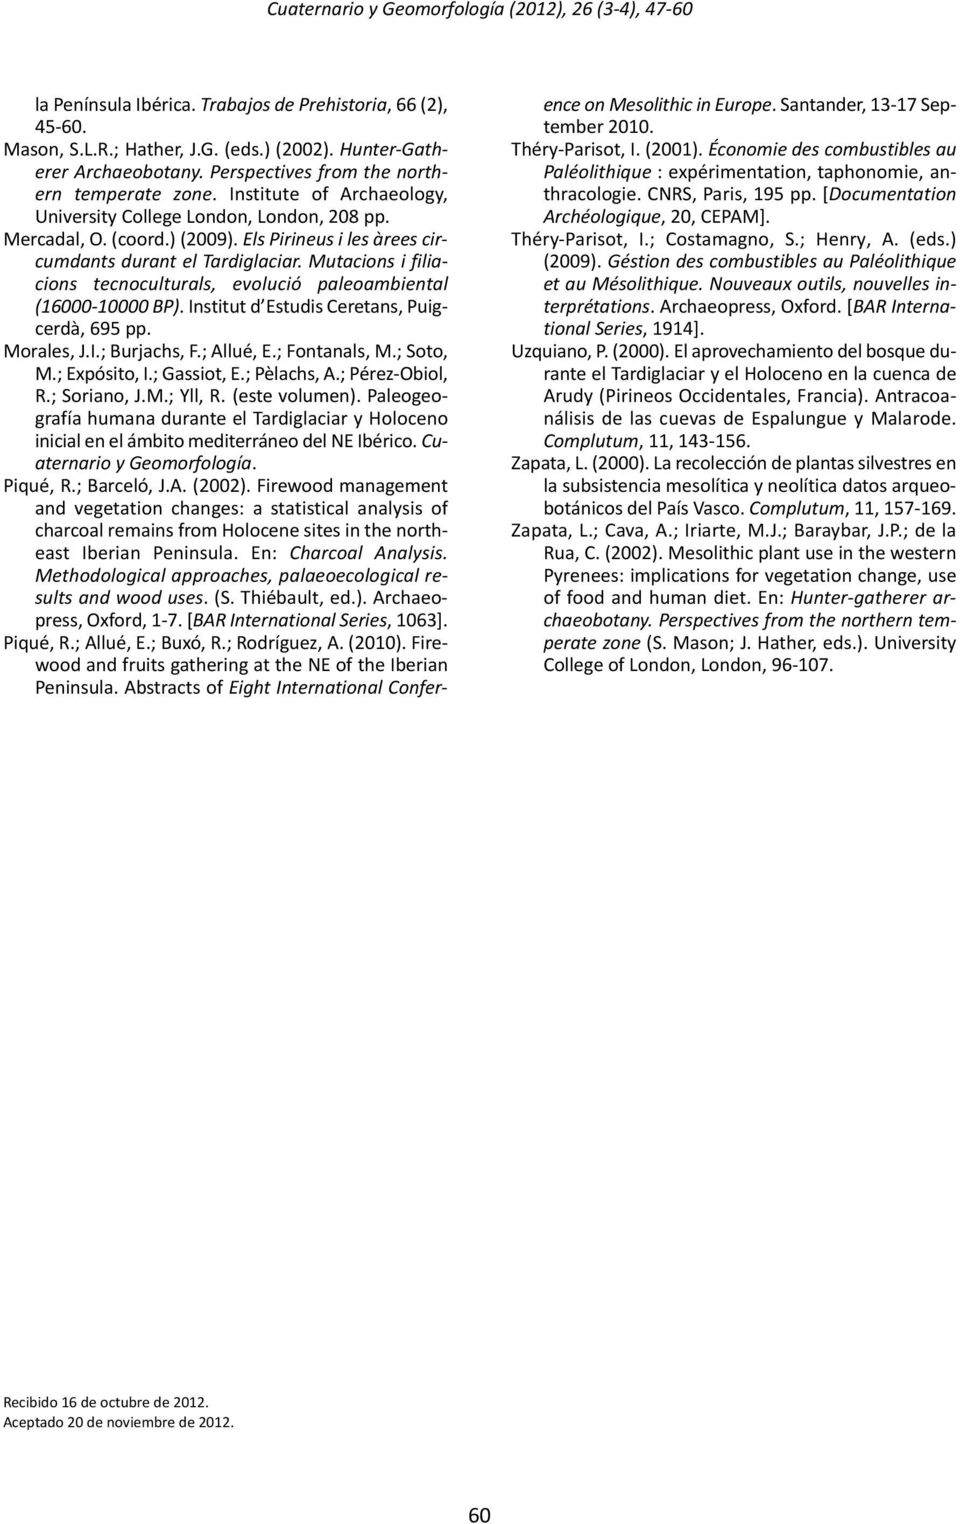 Mutacions i filiacions tecnoculturals, evolució paleoambiental (16000 10000 BP). Institut d Estudis Ceretans, Puigcerdà, 695 pp. Morales, J.I.; Burjachs, F.; Allué, E.; Fontanals, M.; Soto, M.